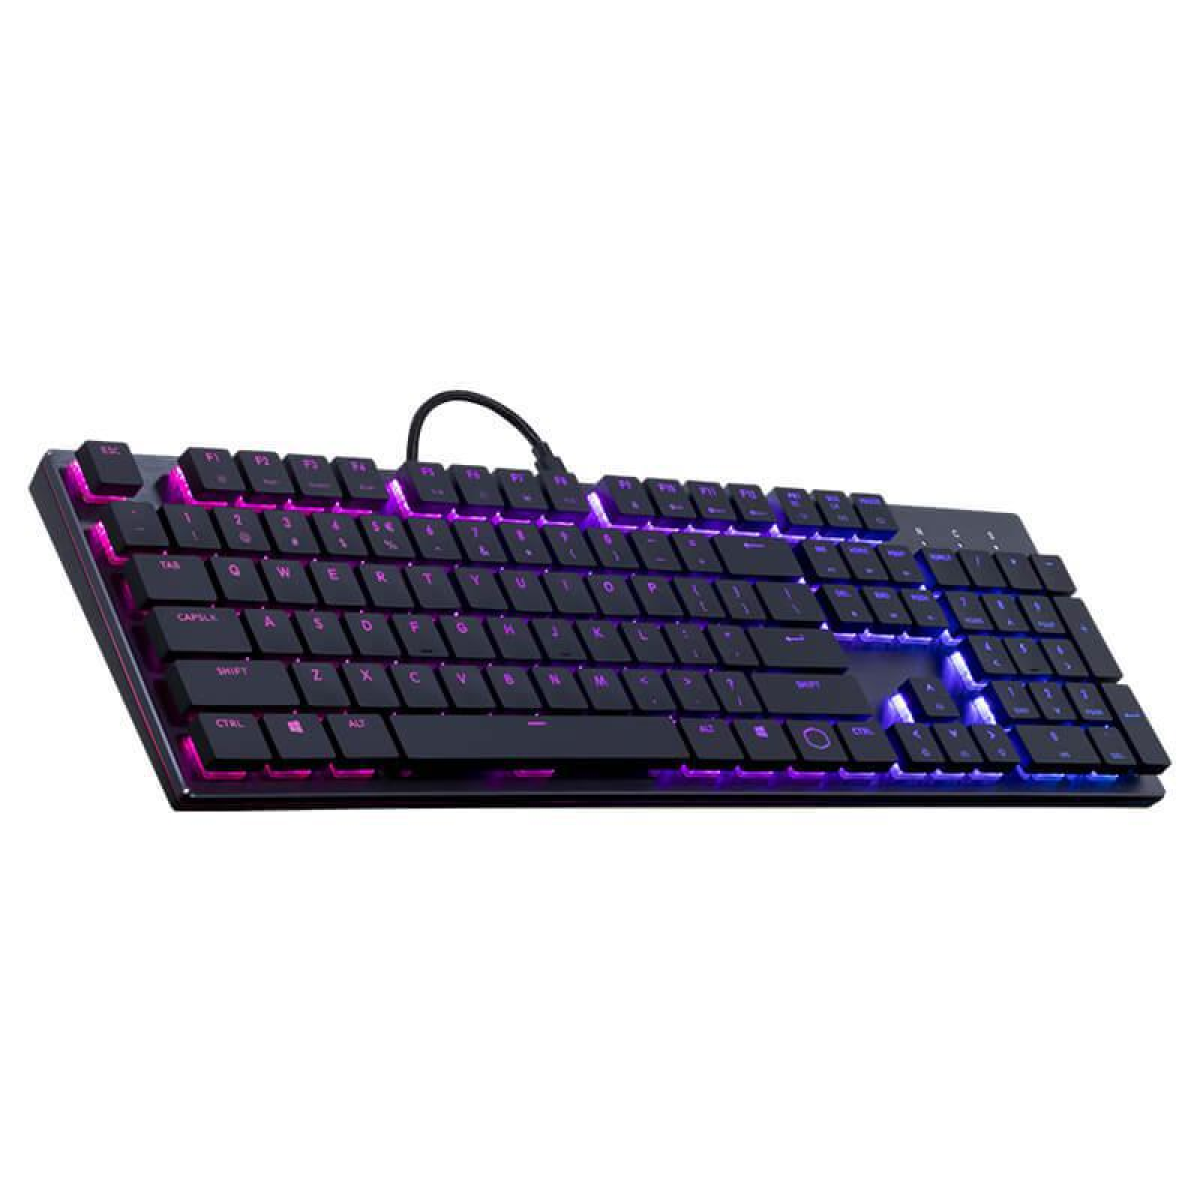 Cooler Master SK650 LOW PROFILE RGB Mechanical Gaming Keyboard (عربي)